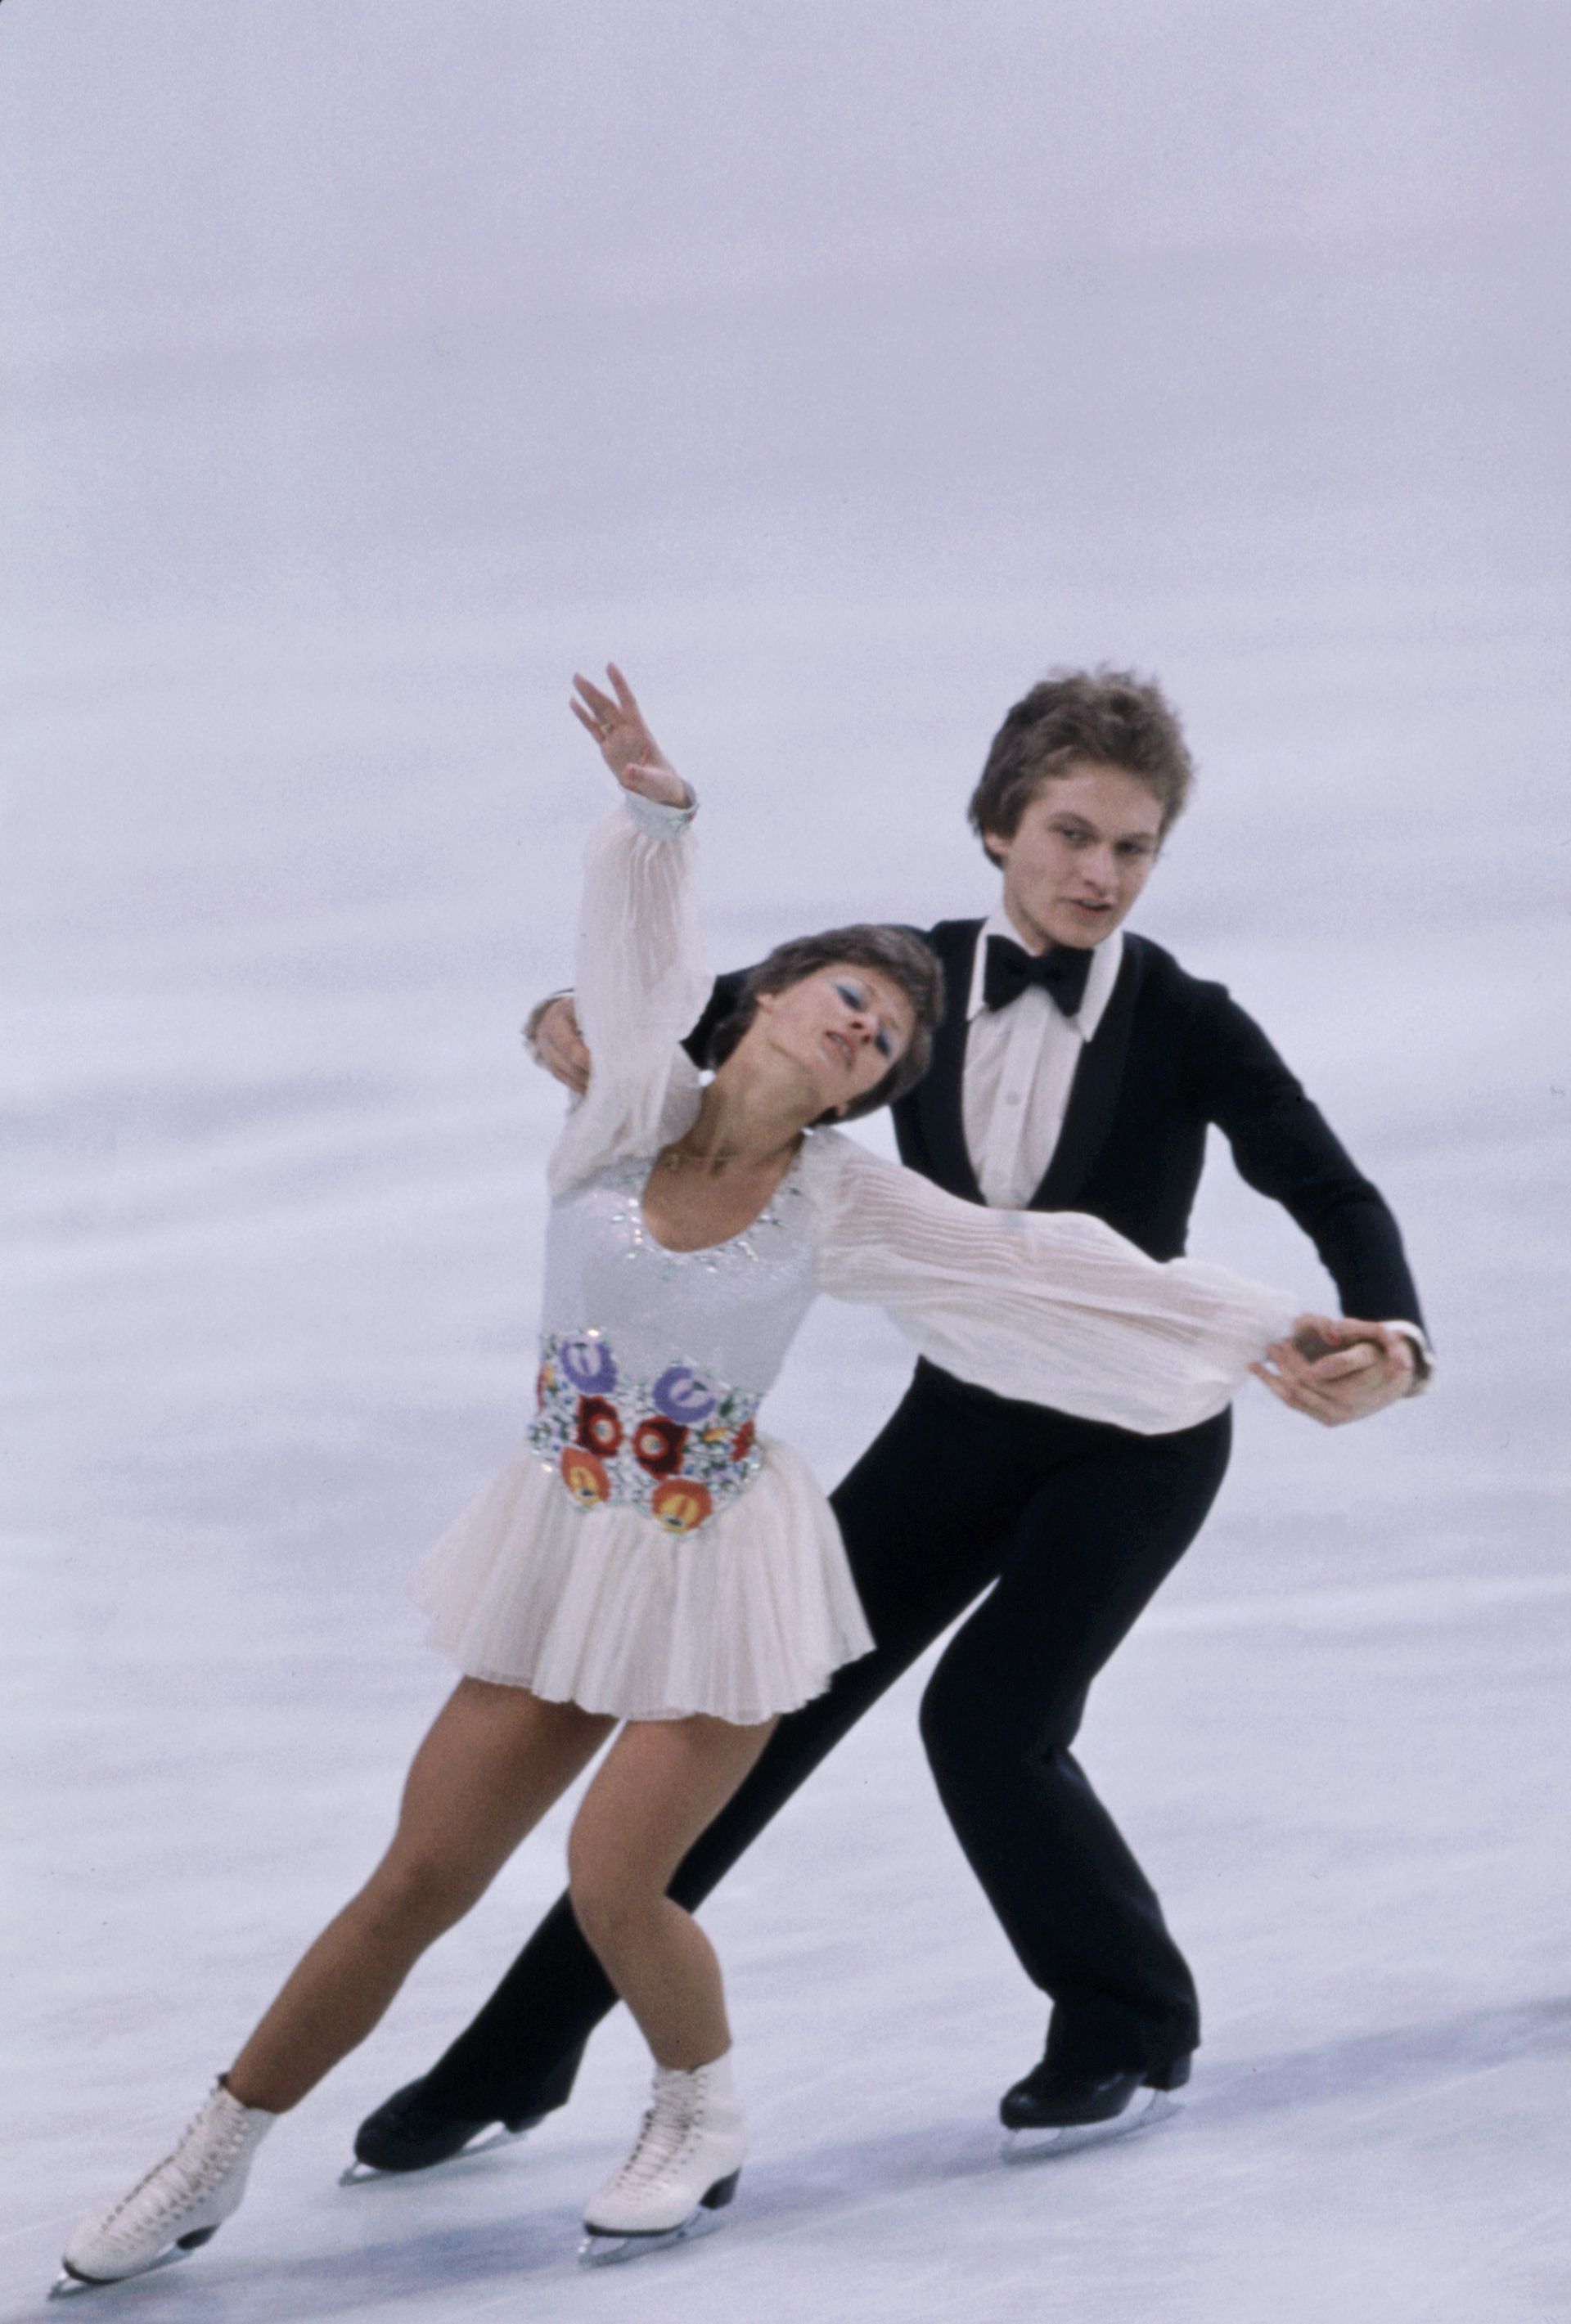 Az 1976-os innsbrucki olimpián is ott voltak már, akkor az ötödik helyen végeztek (Fotó: GettyImages)